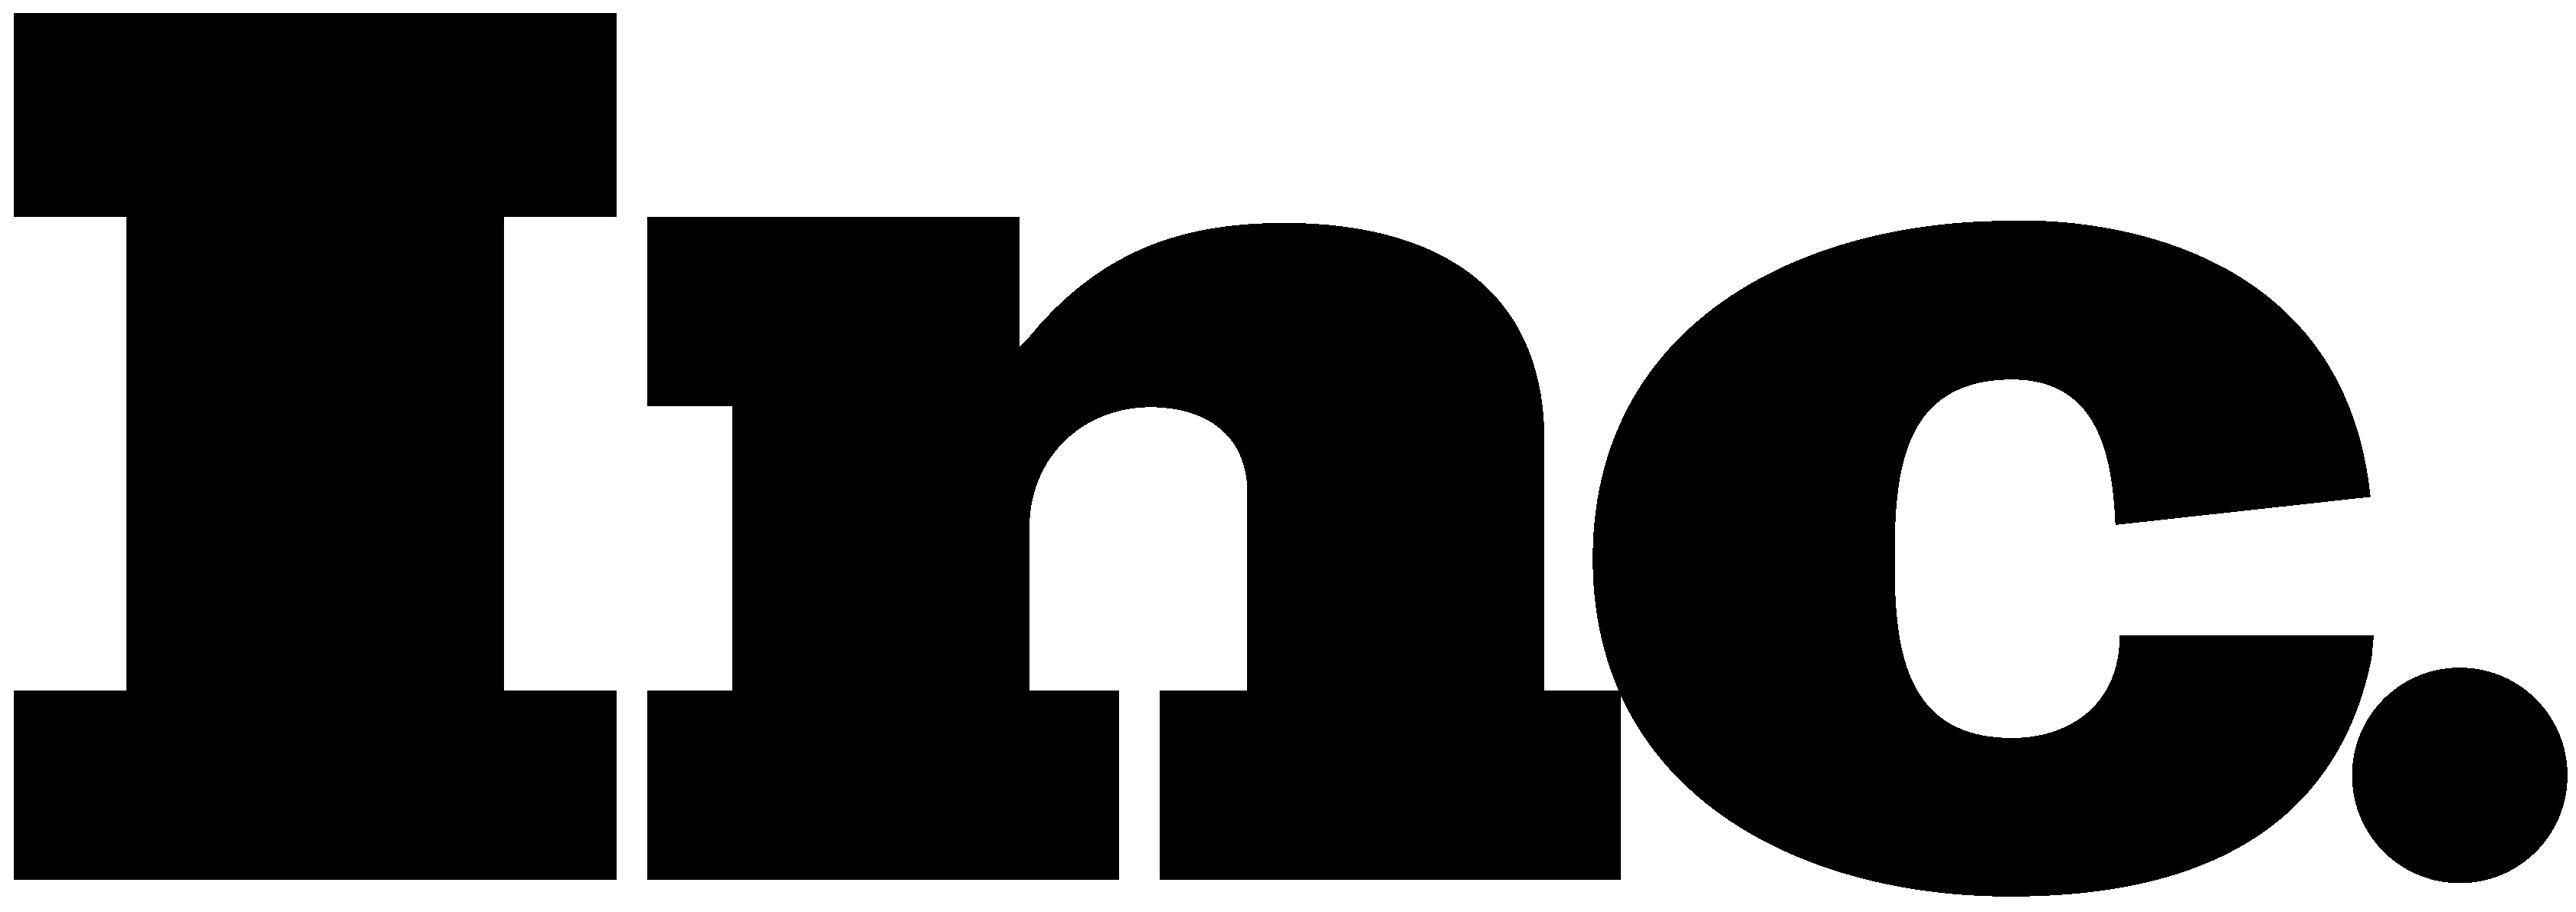 Inc. Magazine Logo - Inc. Logo [Magazine - inc.com] Vector Free Download